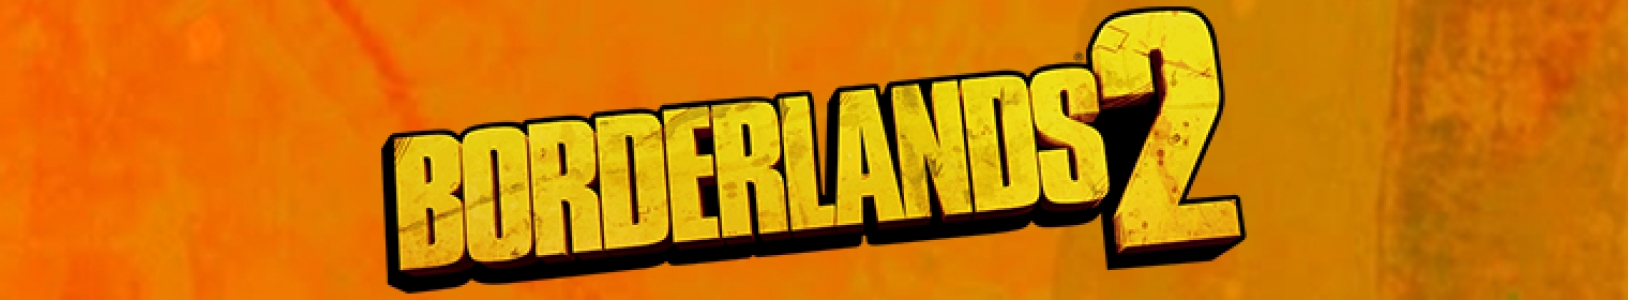 Borderlands 2 banner